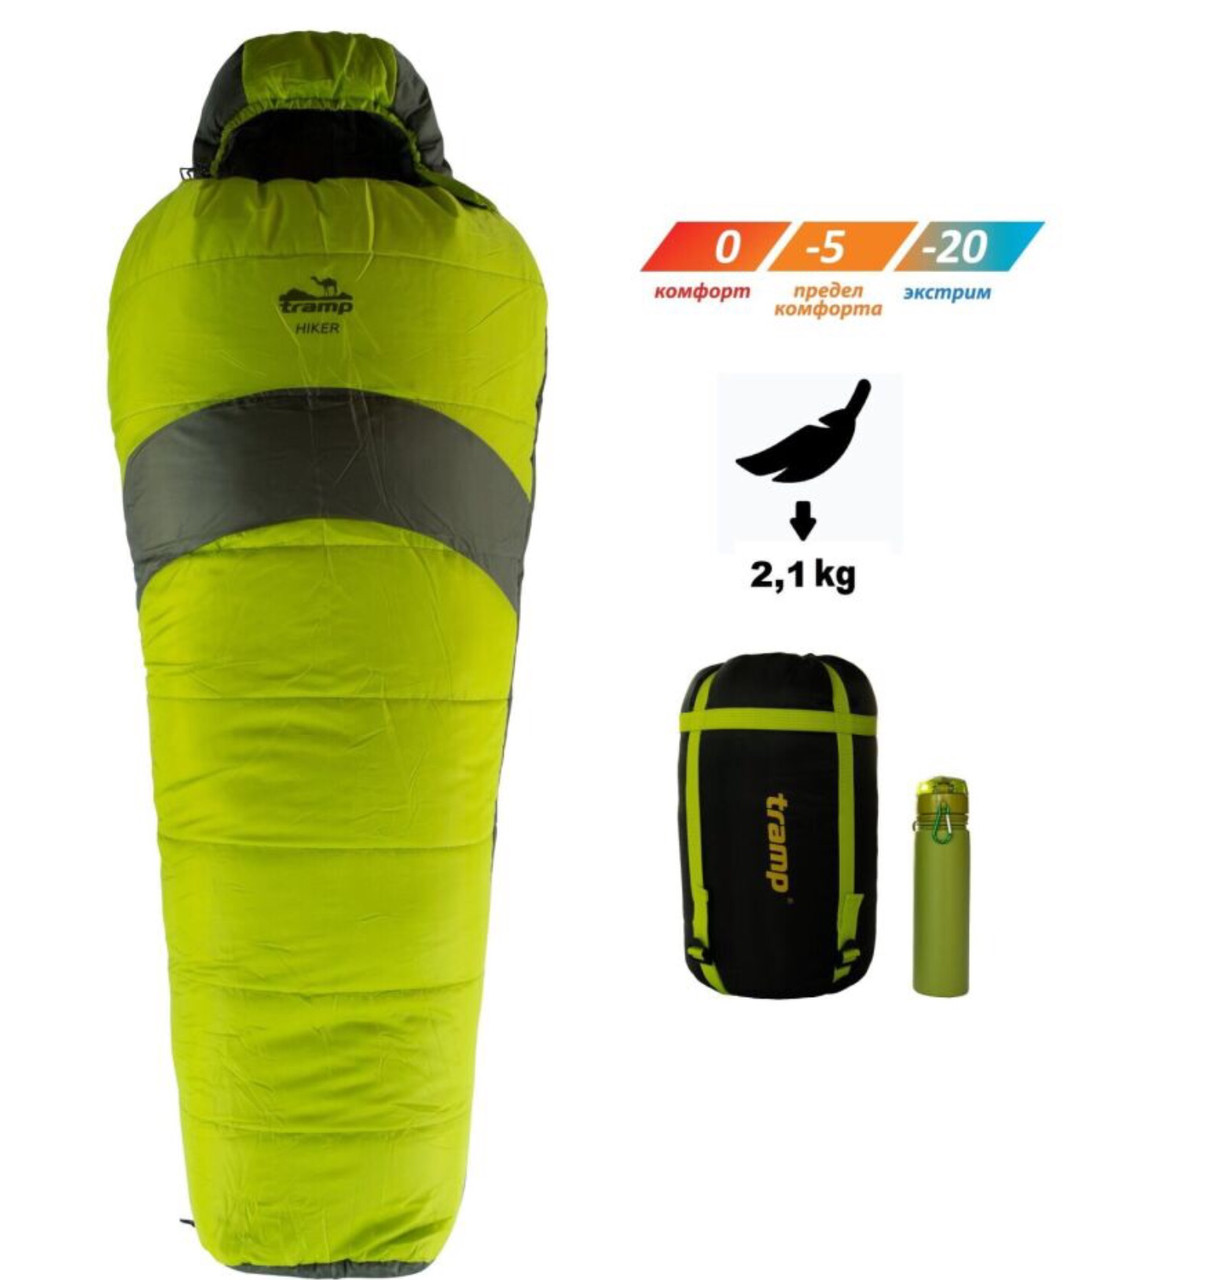 Спальный мешок Tramp Hiker Regular 220*80*50см (левый)